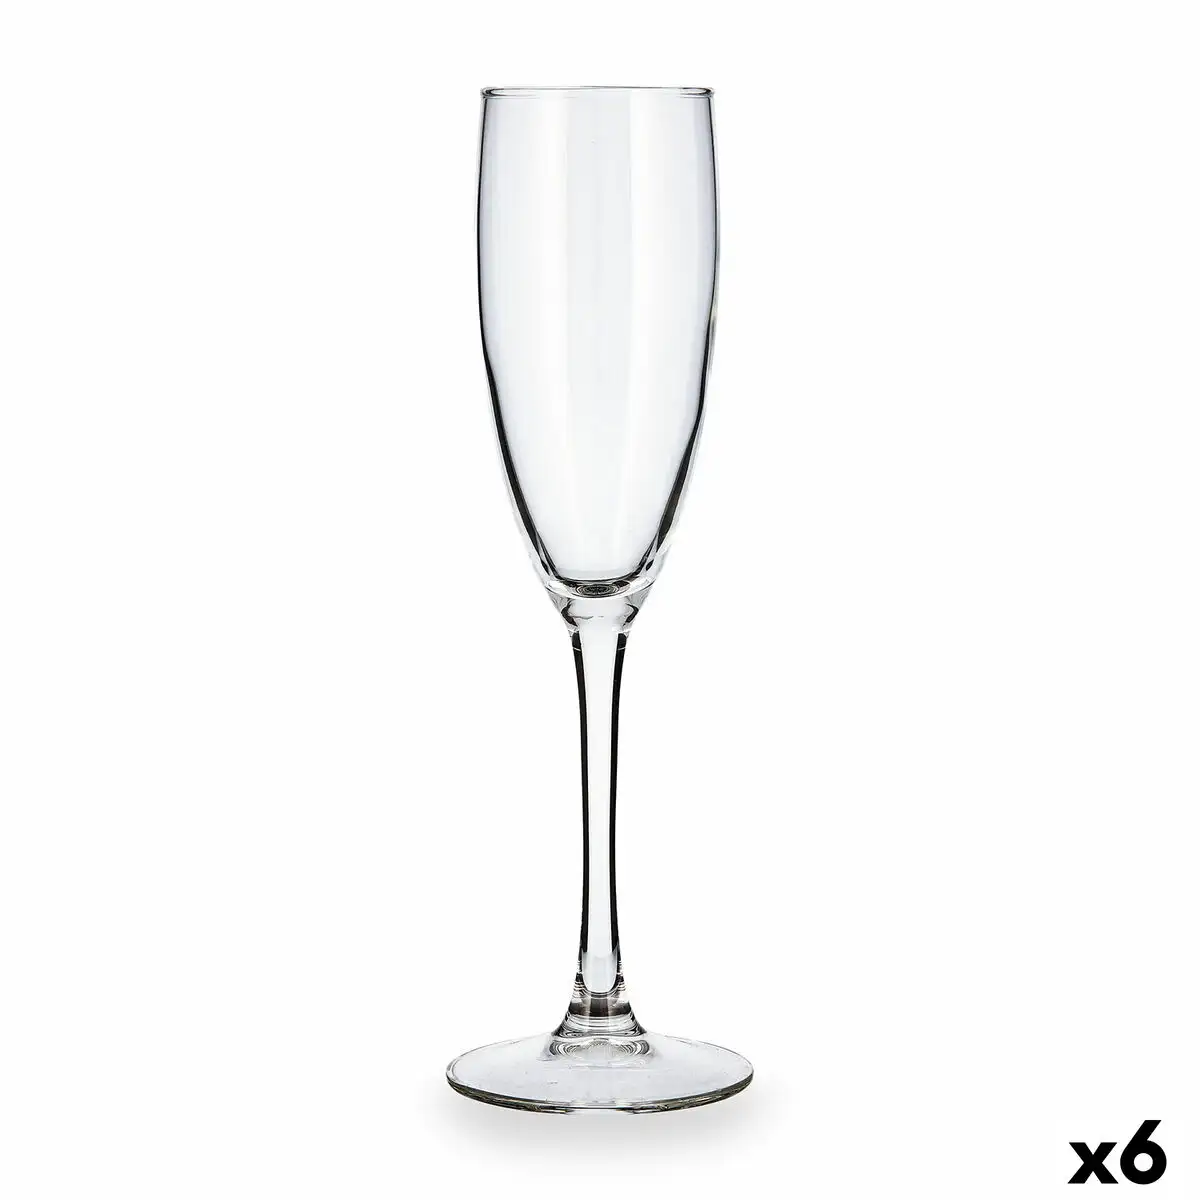 Coupe de champagne luminarc duero transparent verre 170 ml 6 unites _2493. DIAYTAR SENEGAL - Votre Boutique en Ligne, Votre Histoire. Explorez notre sélection et découvrez des produits qui reflètent votre parcours et vos aspirations, un achat à la fois.